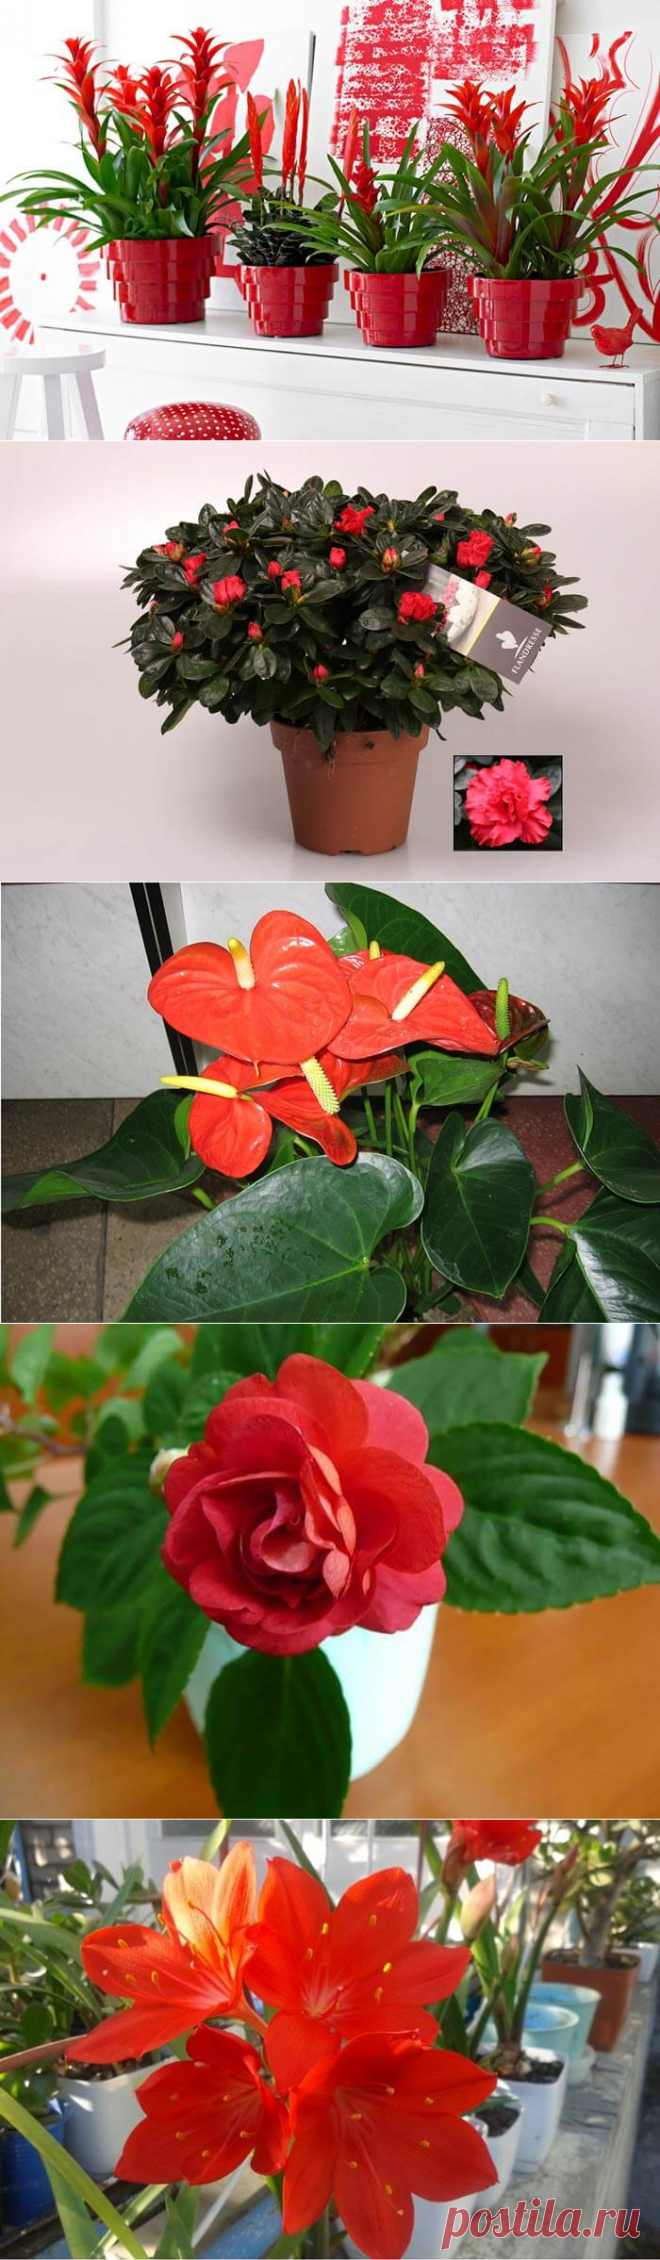 Все комнатные растения с красными цветами — Бабушкины секреты